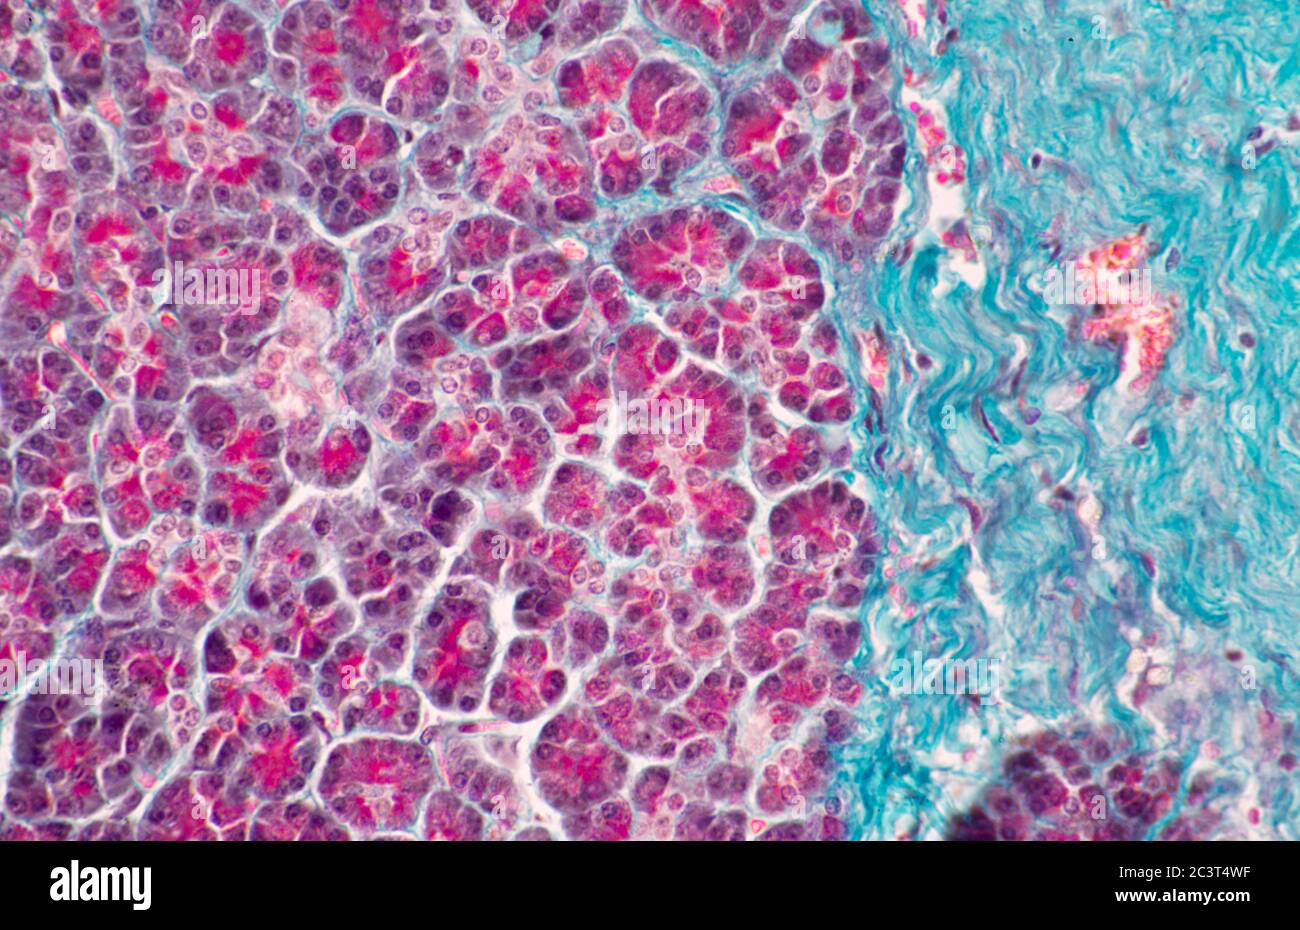 Pancreas, sezione sottile colorata, vista al microscopio Foto Stock